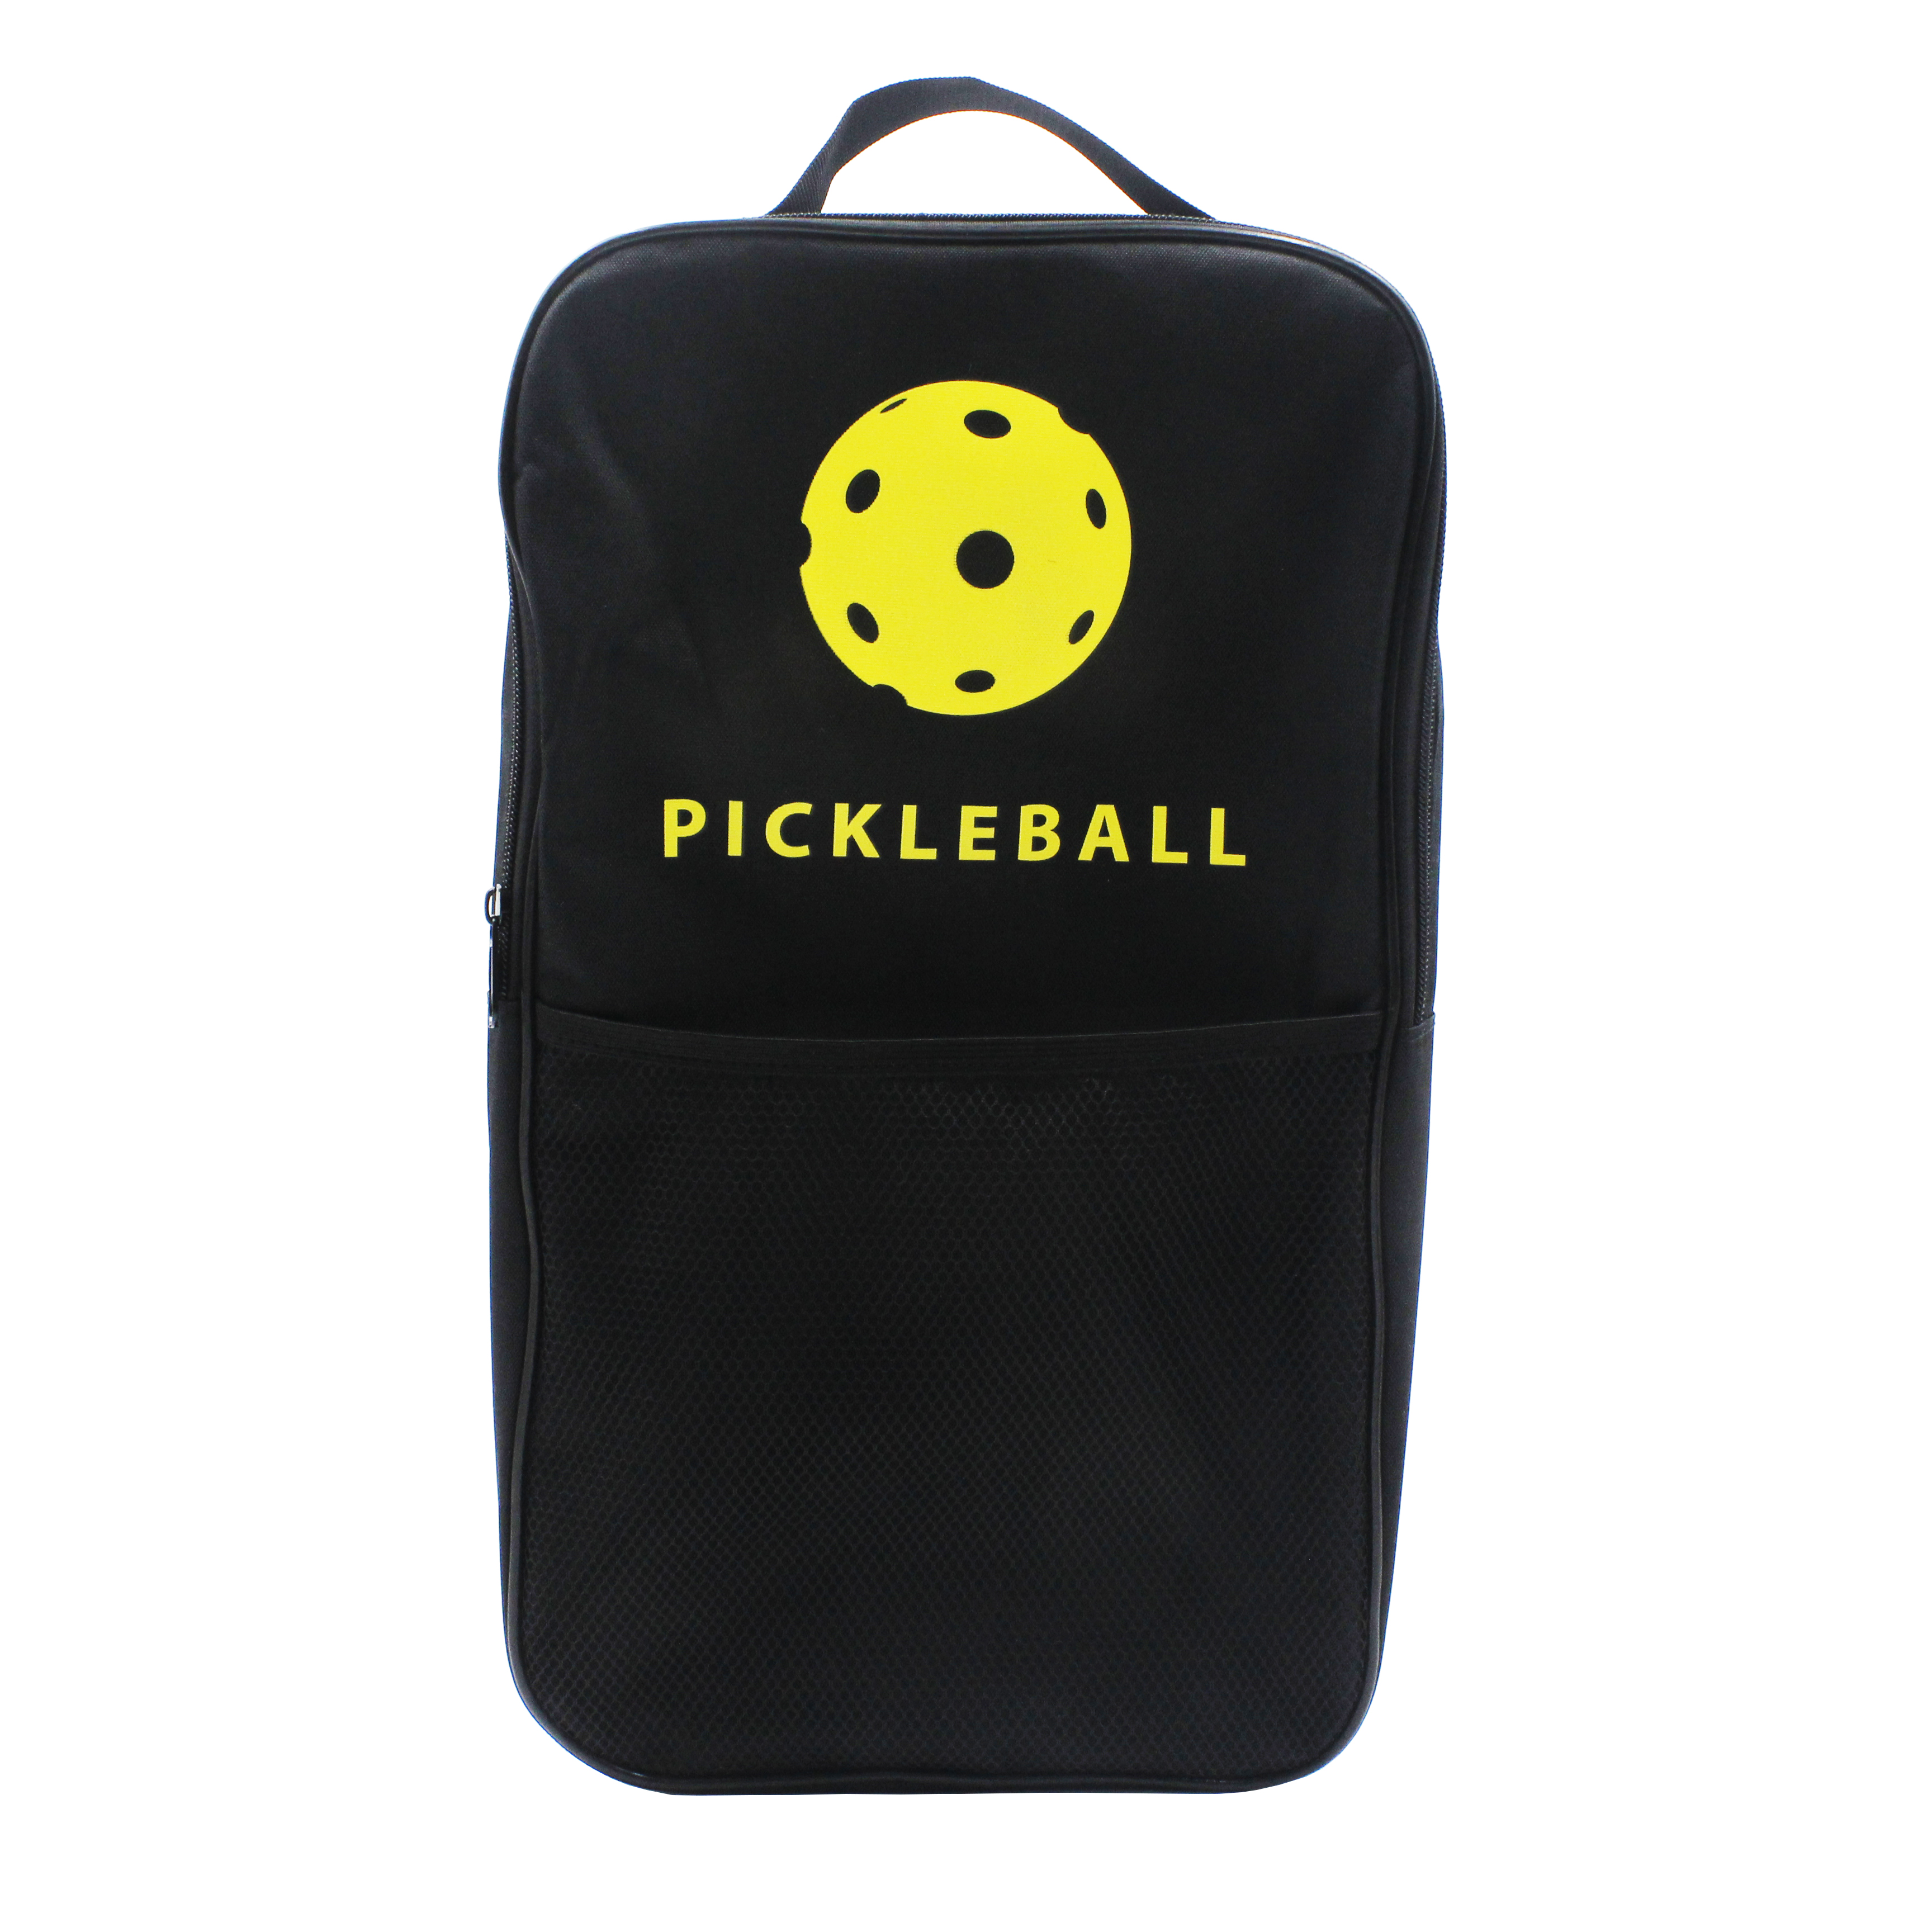 Pickleball-Paddel zum Fabrikpreis, USAPA-zugelassenes Pickleball-Set mit Glasfaseroberfläche und Pickleball-Schlägern, Pickleball-Paddel-Set für Männer und Frauen